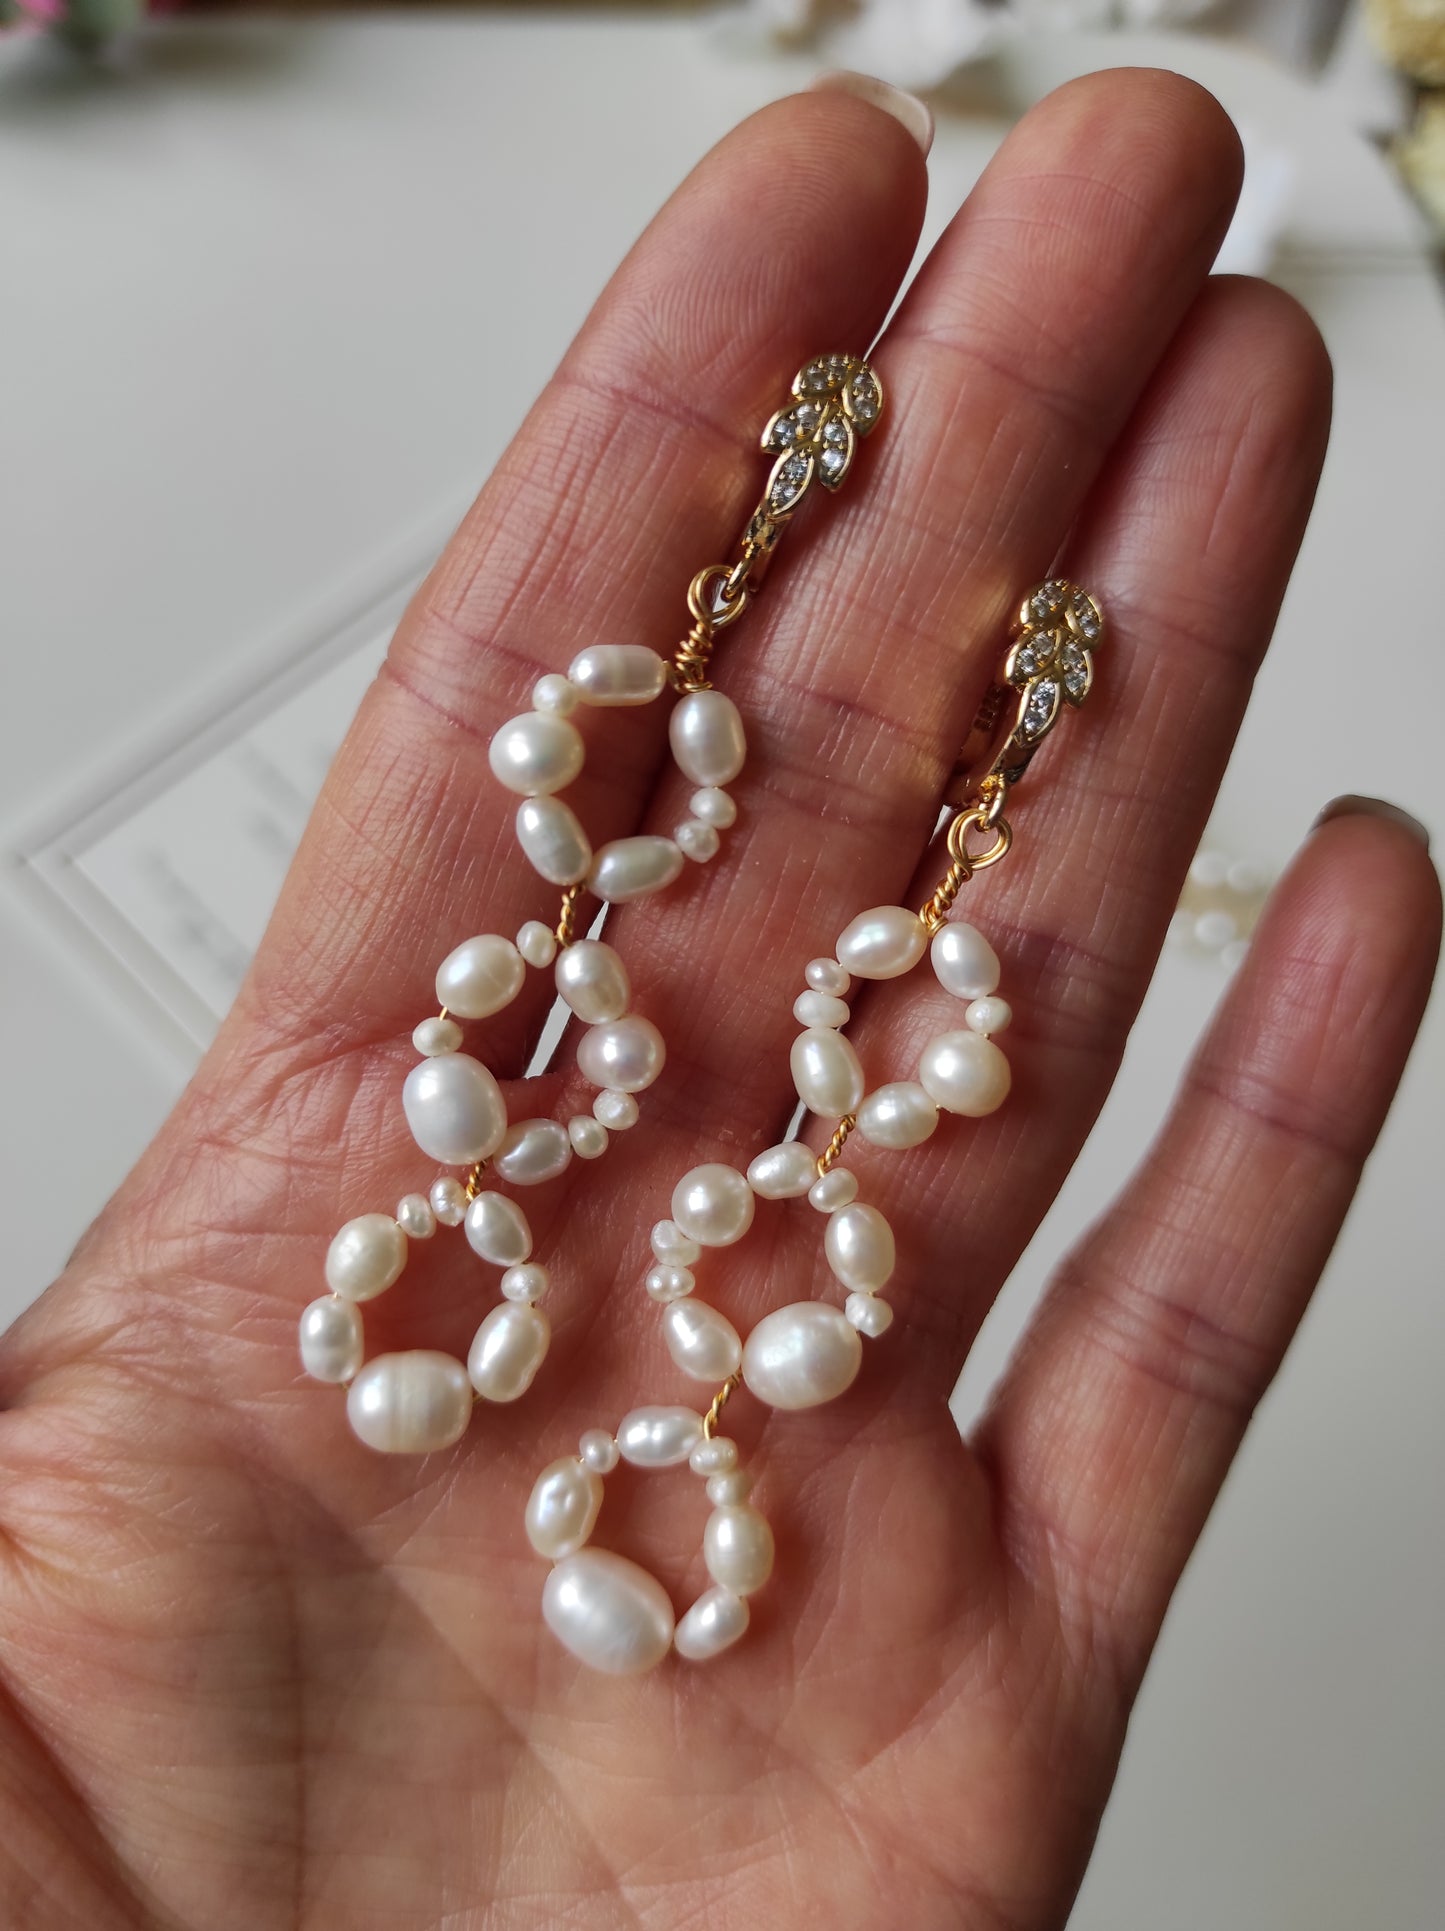 BEYOND - Freshwater pearl earrings / Wedding jewelry / Bridal earrings